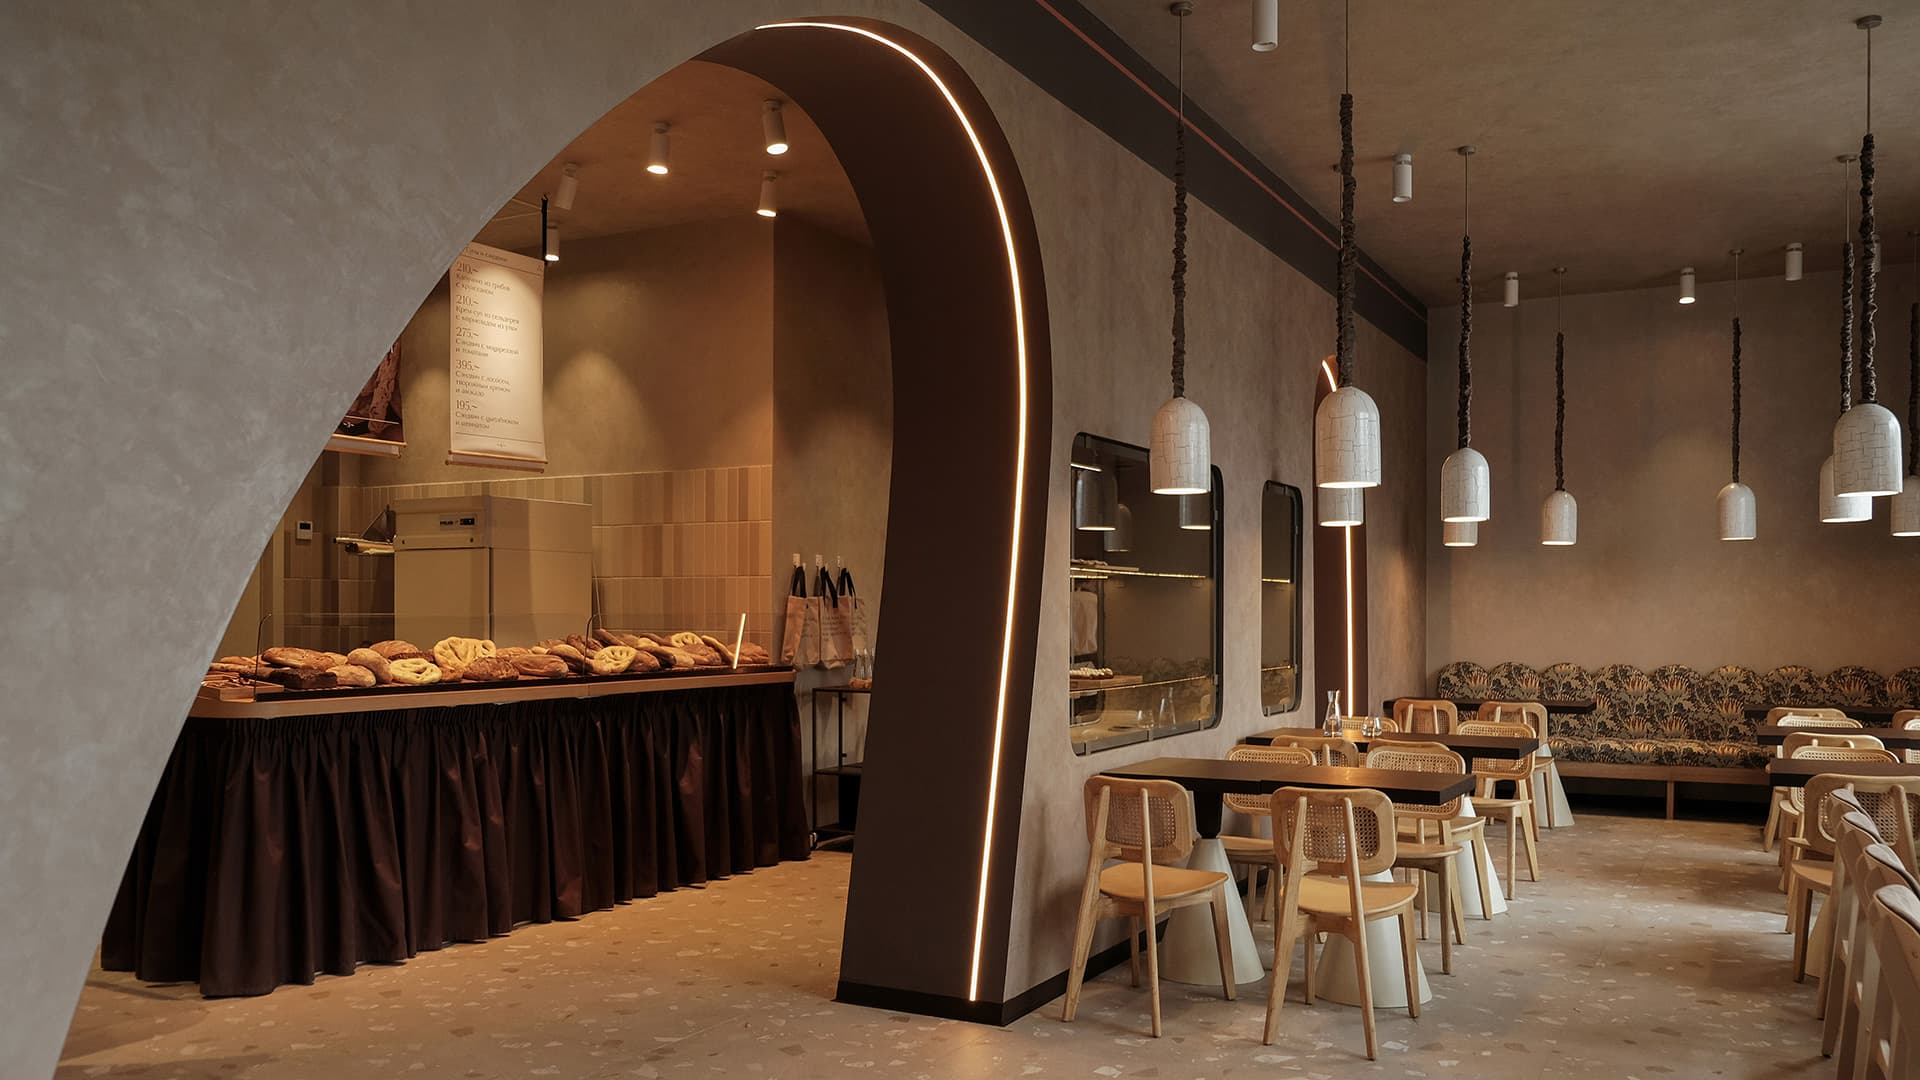 Дизайн кафе и ресторанов - идеи интерьеров разных стилей